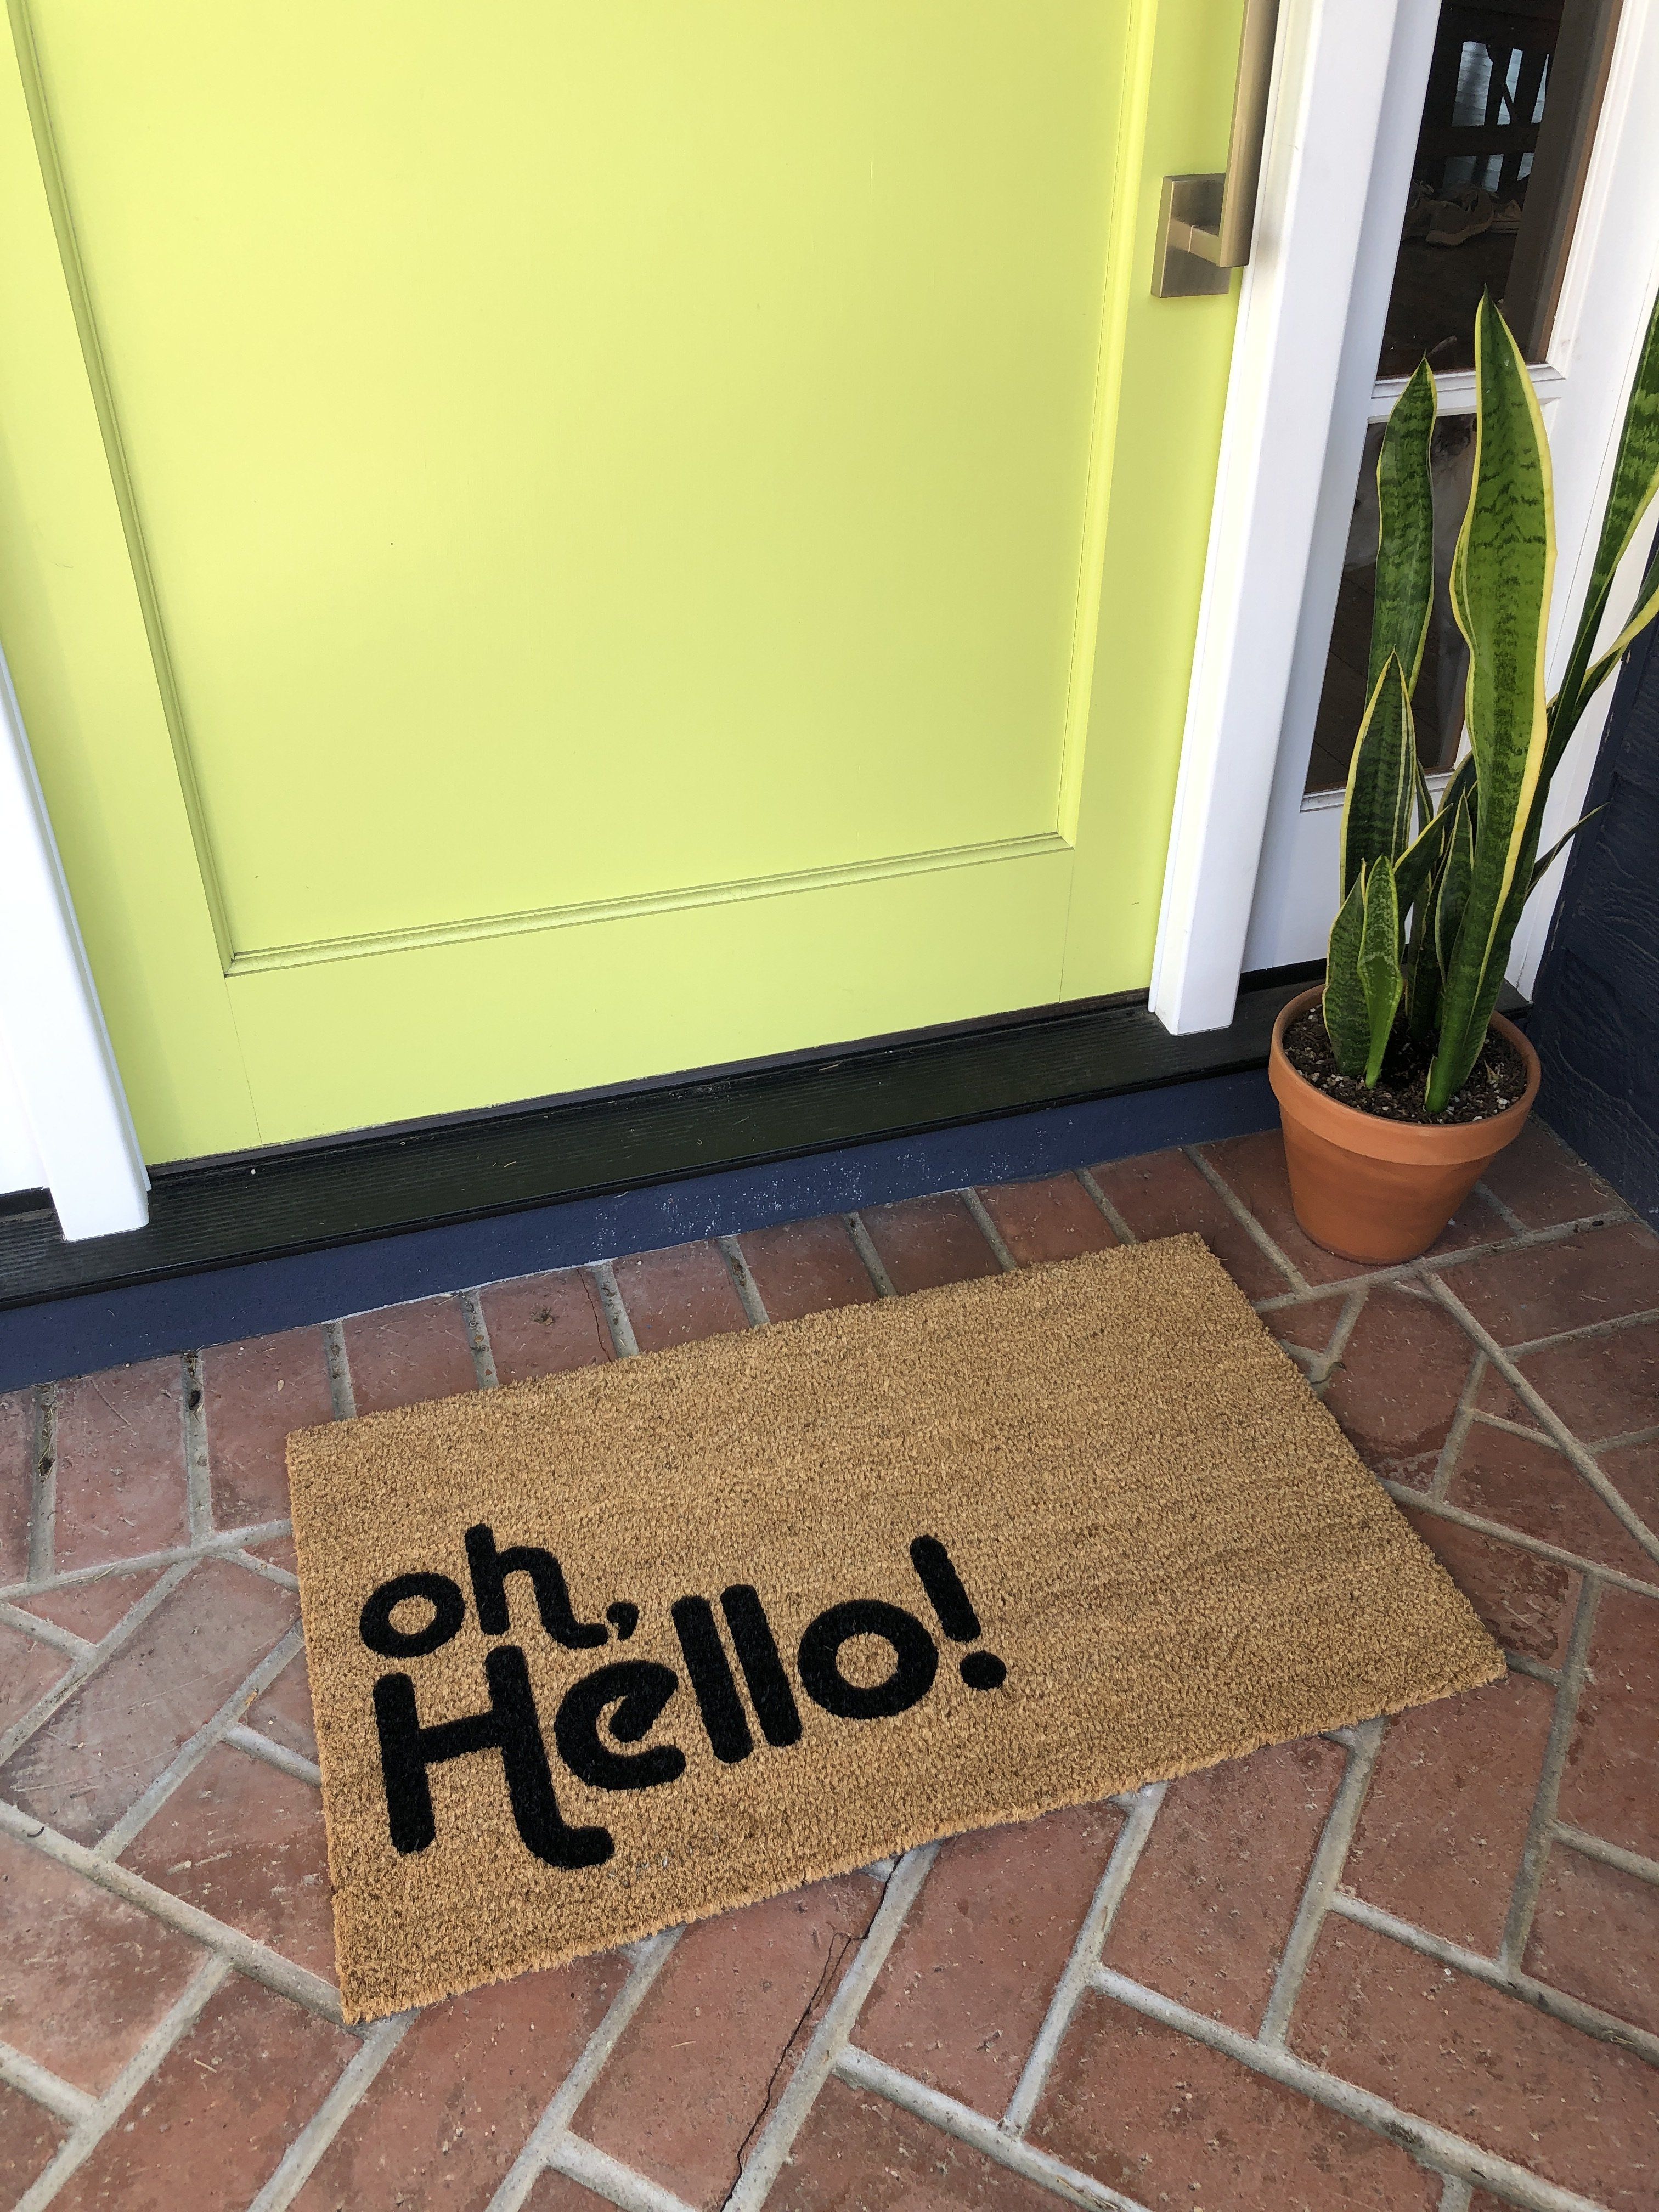 Well Hello There Door Mat, Housewarming Gift, Gift for New Home, Front Door  Mat, Funny Doormat, Outdoor Layeri Rug, Unique Door Mat, Coir 